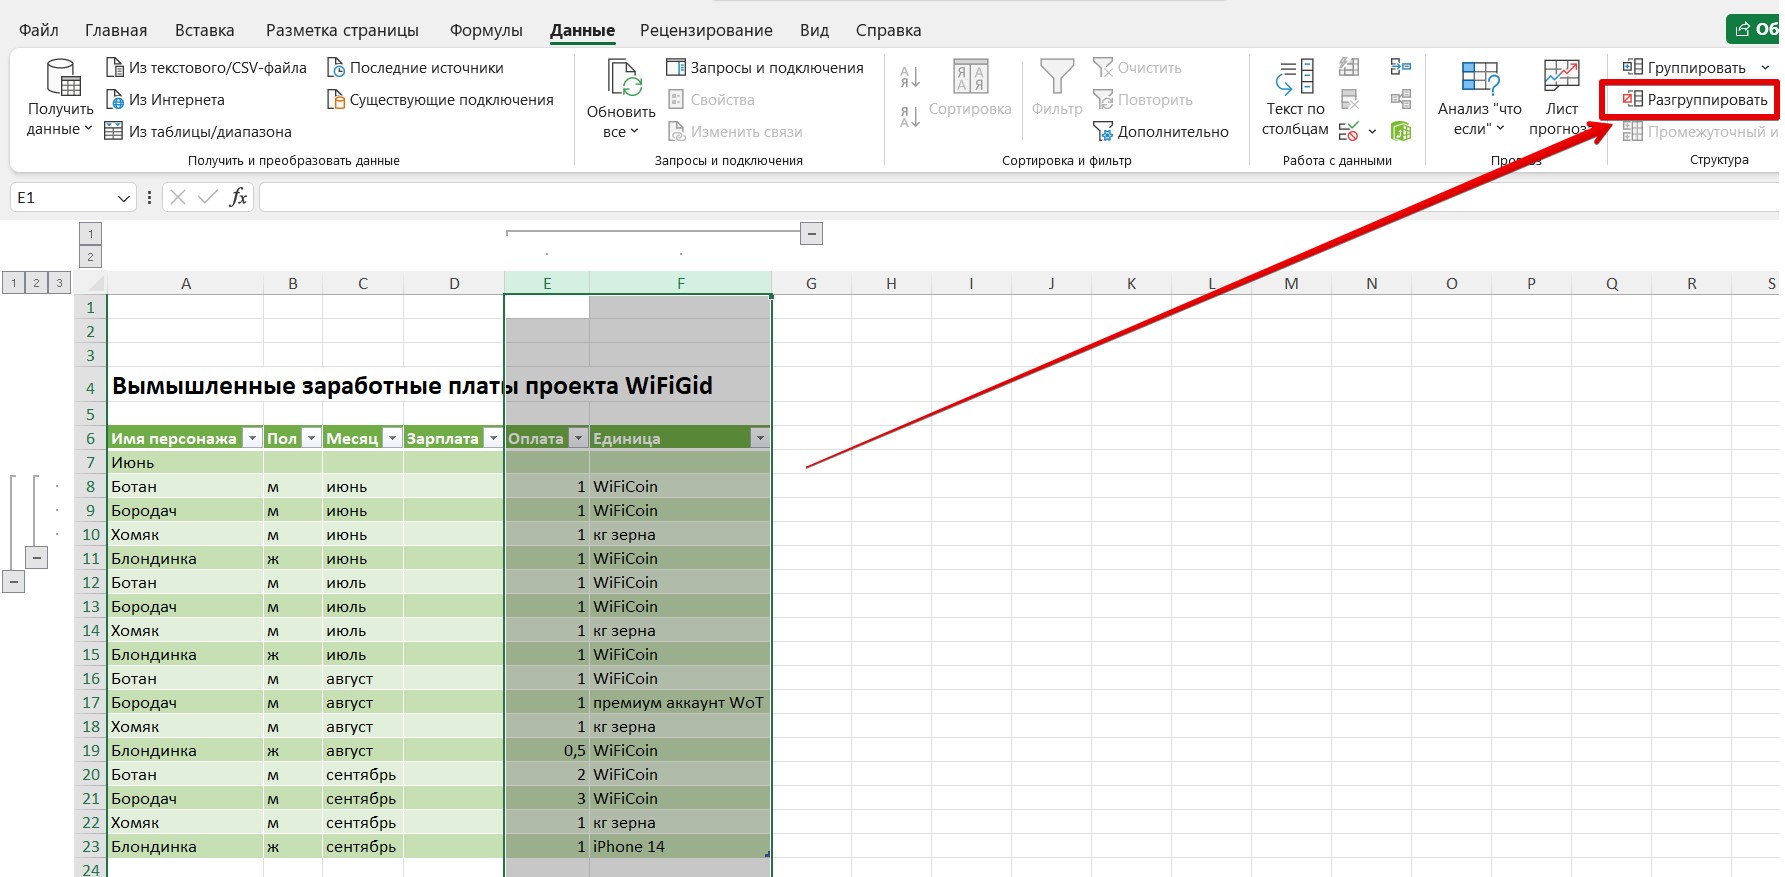 Группировка данных в Excel: строки и столбцы